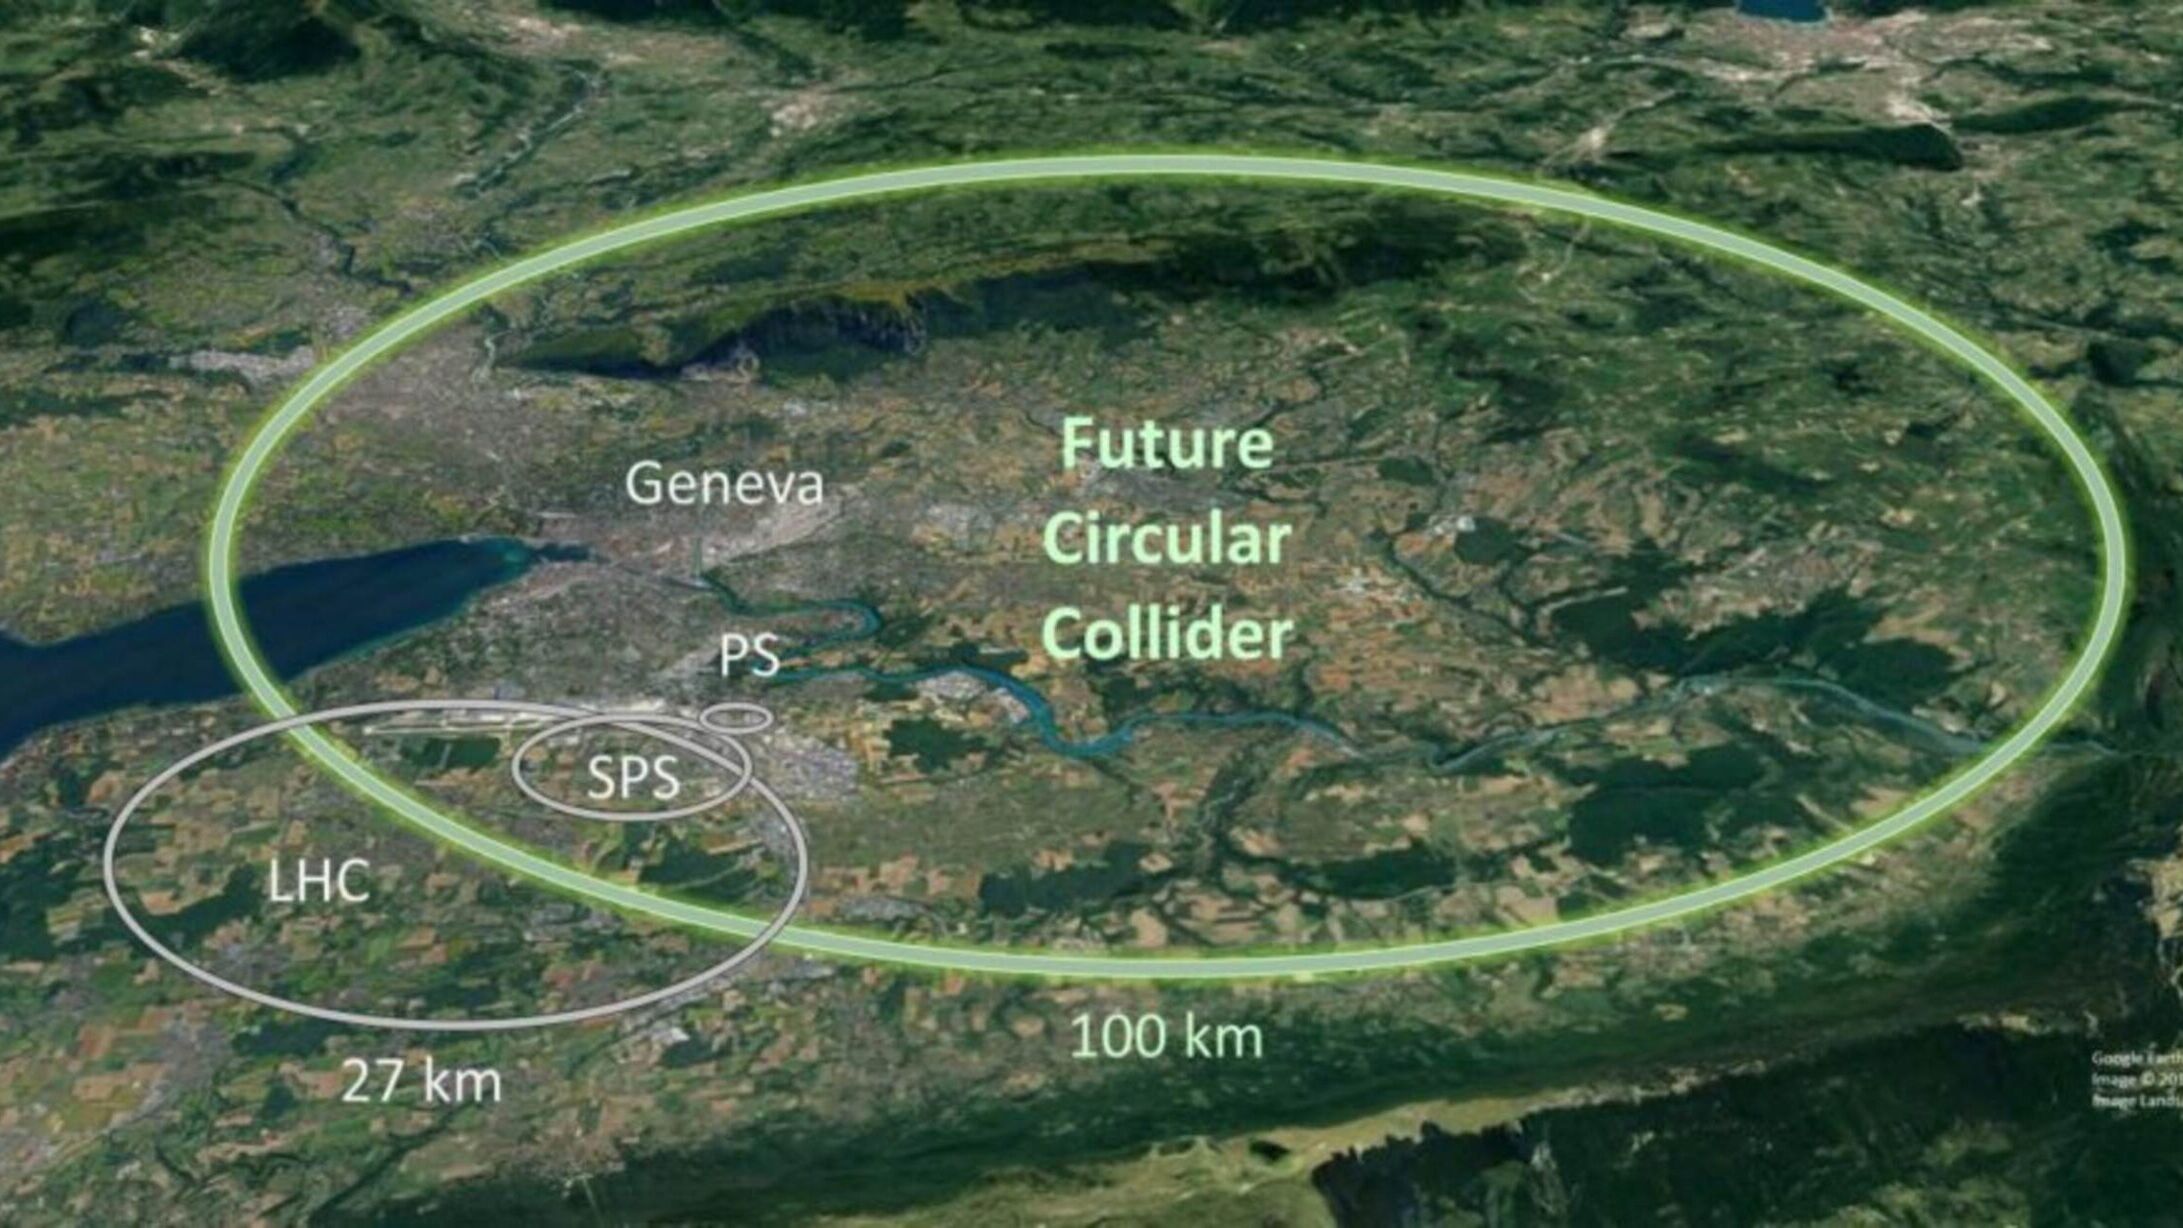 CERN: in 2024 beidh seachtó breithlá na saotharlainne Eorpaí um thaighde ar fhisic na gcáithníní sa Ghinéiv oscailte do chách agus déanfar é a cheiliúradh le níos mó imeachtaí agus i go leor tíortha